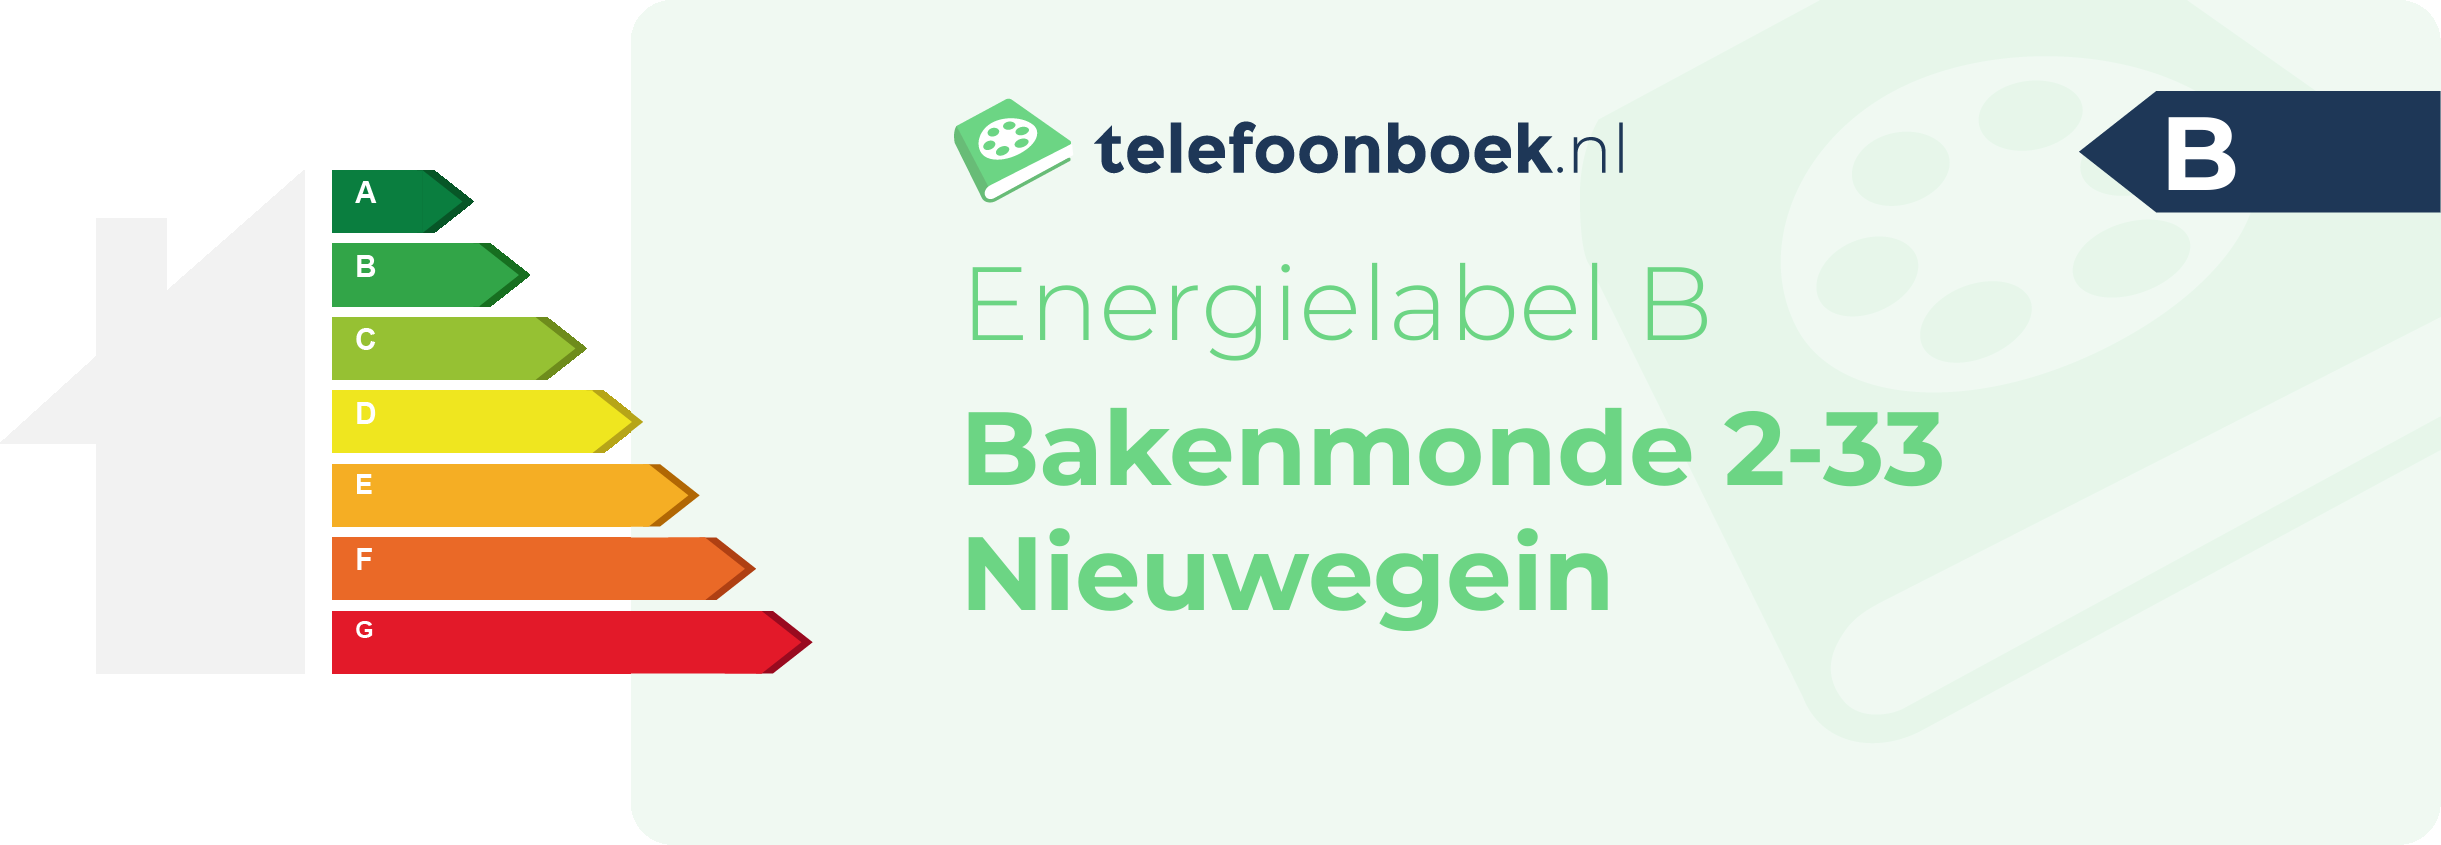 Energielabel Bakenmonde 2-33 Nieuwegein